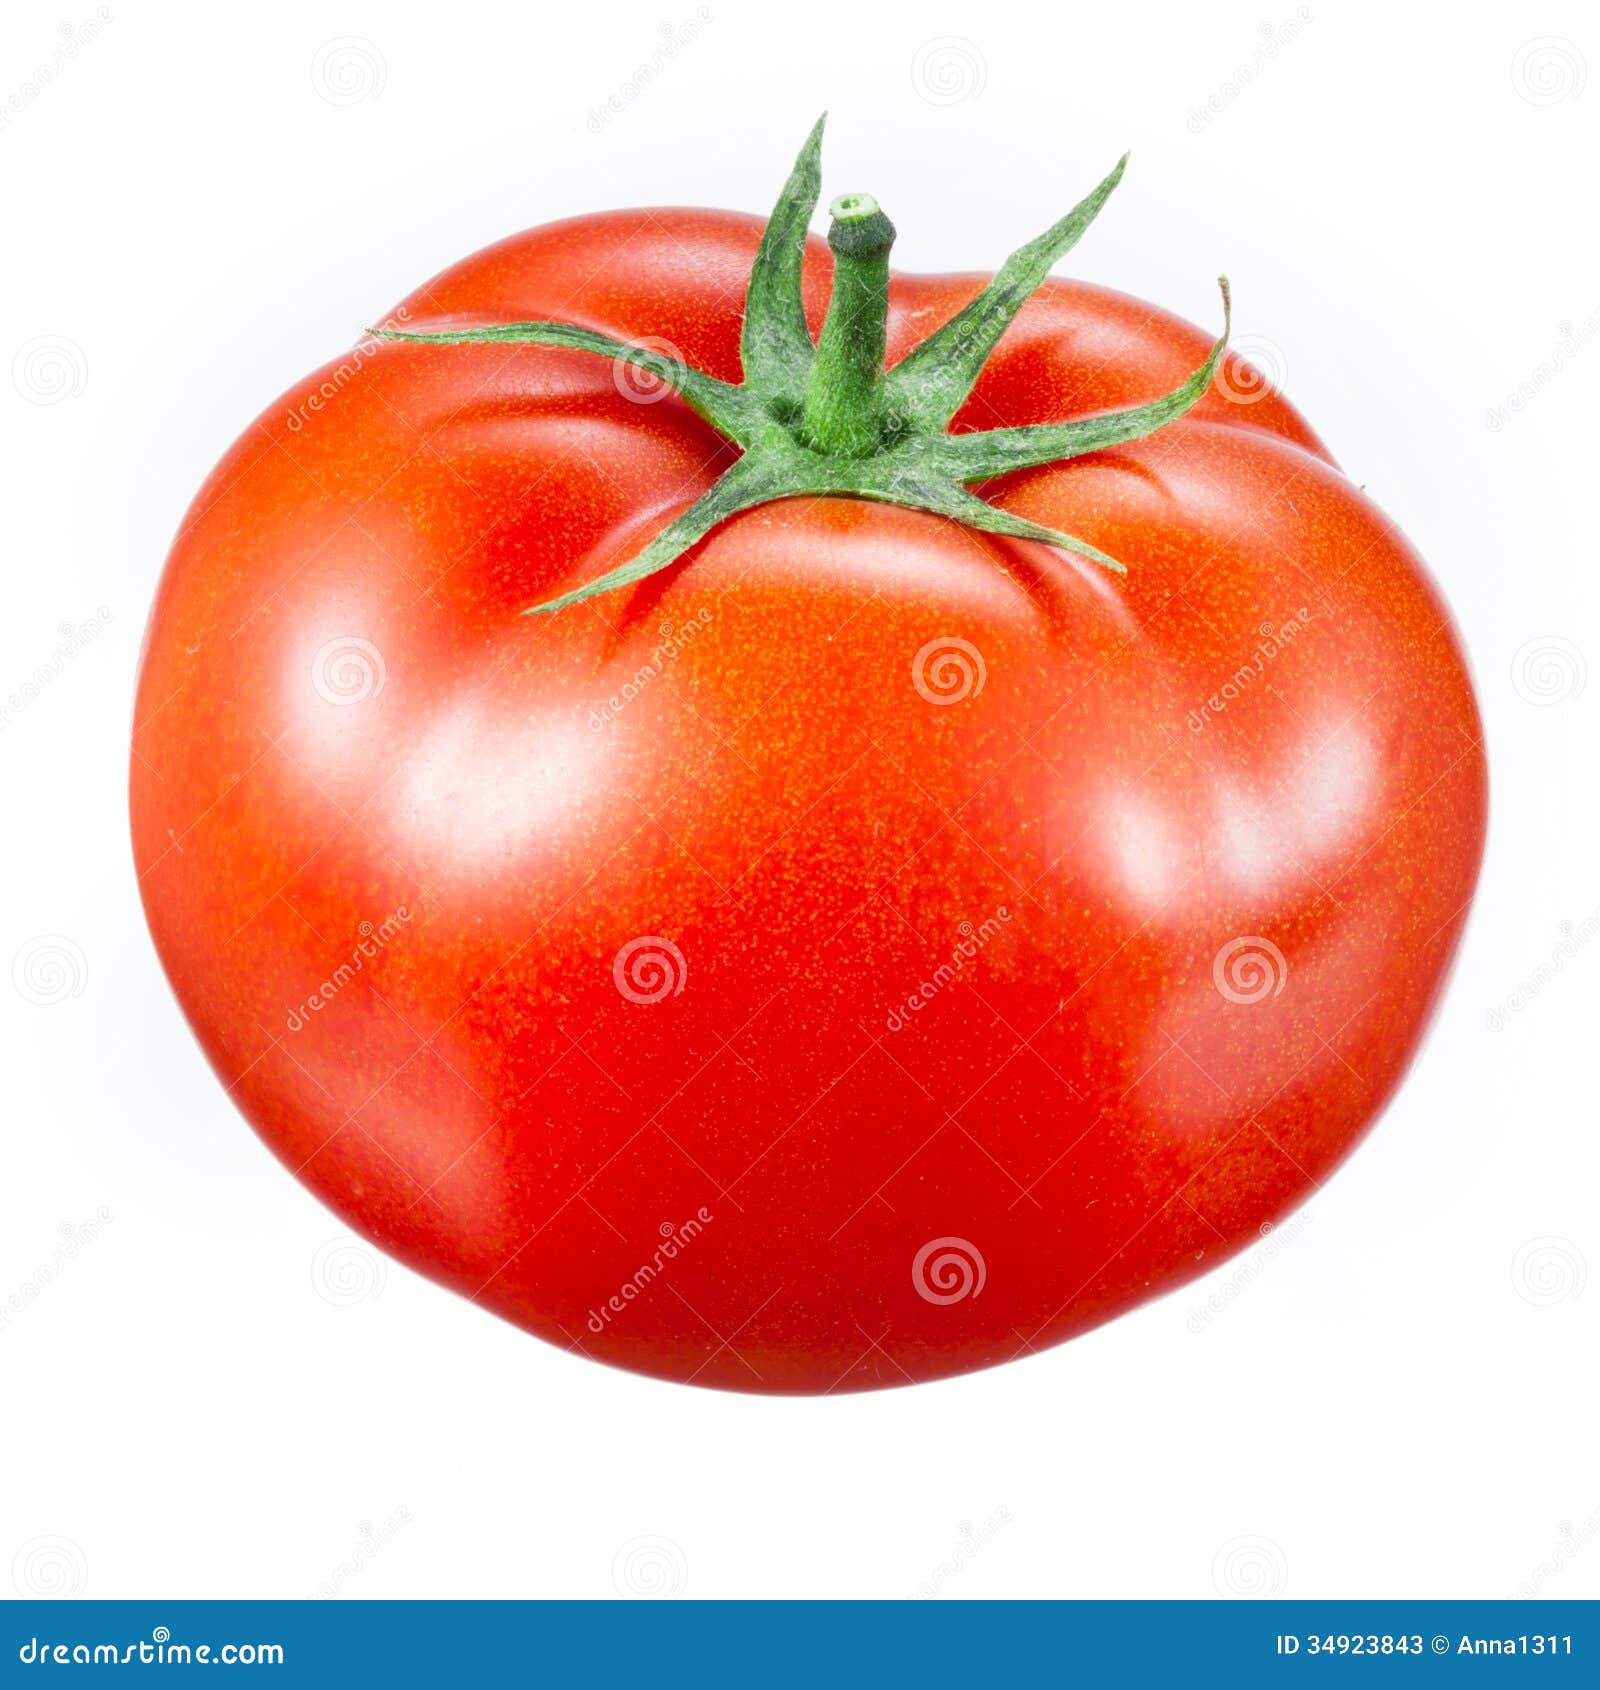 tomato  on white